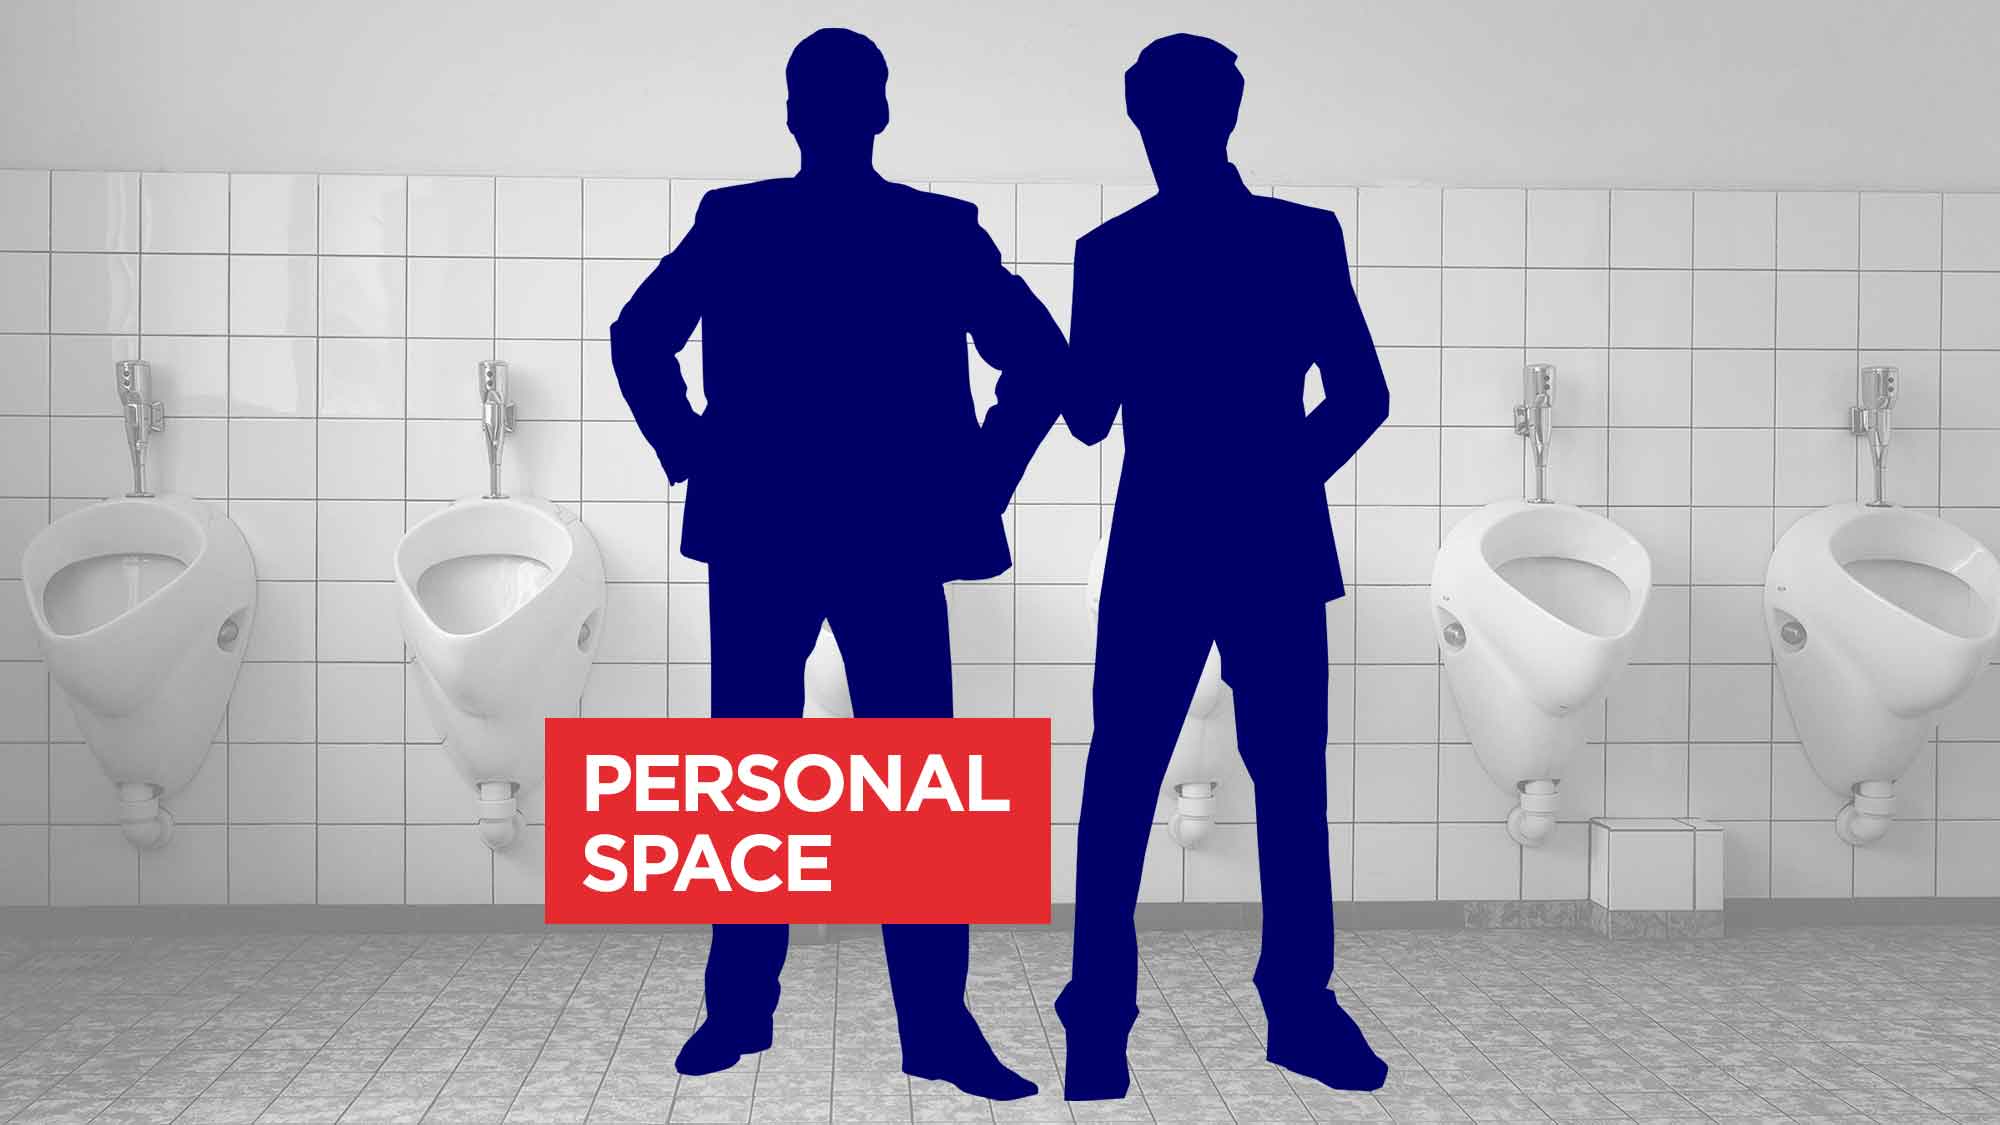 Urinal Etiquette Quiz - Urinal Spacing - Spacing Between Urinals